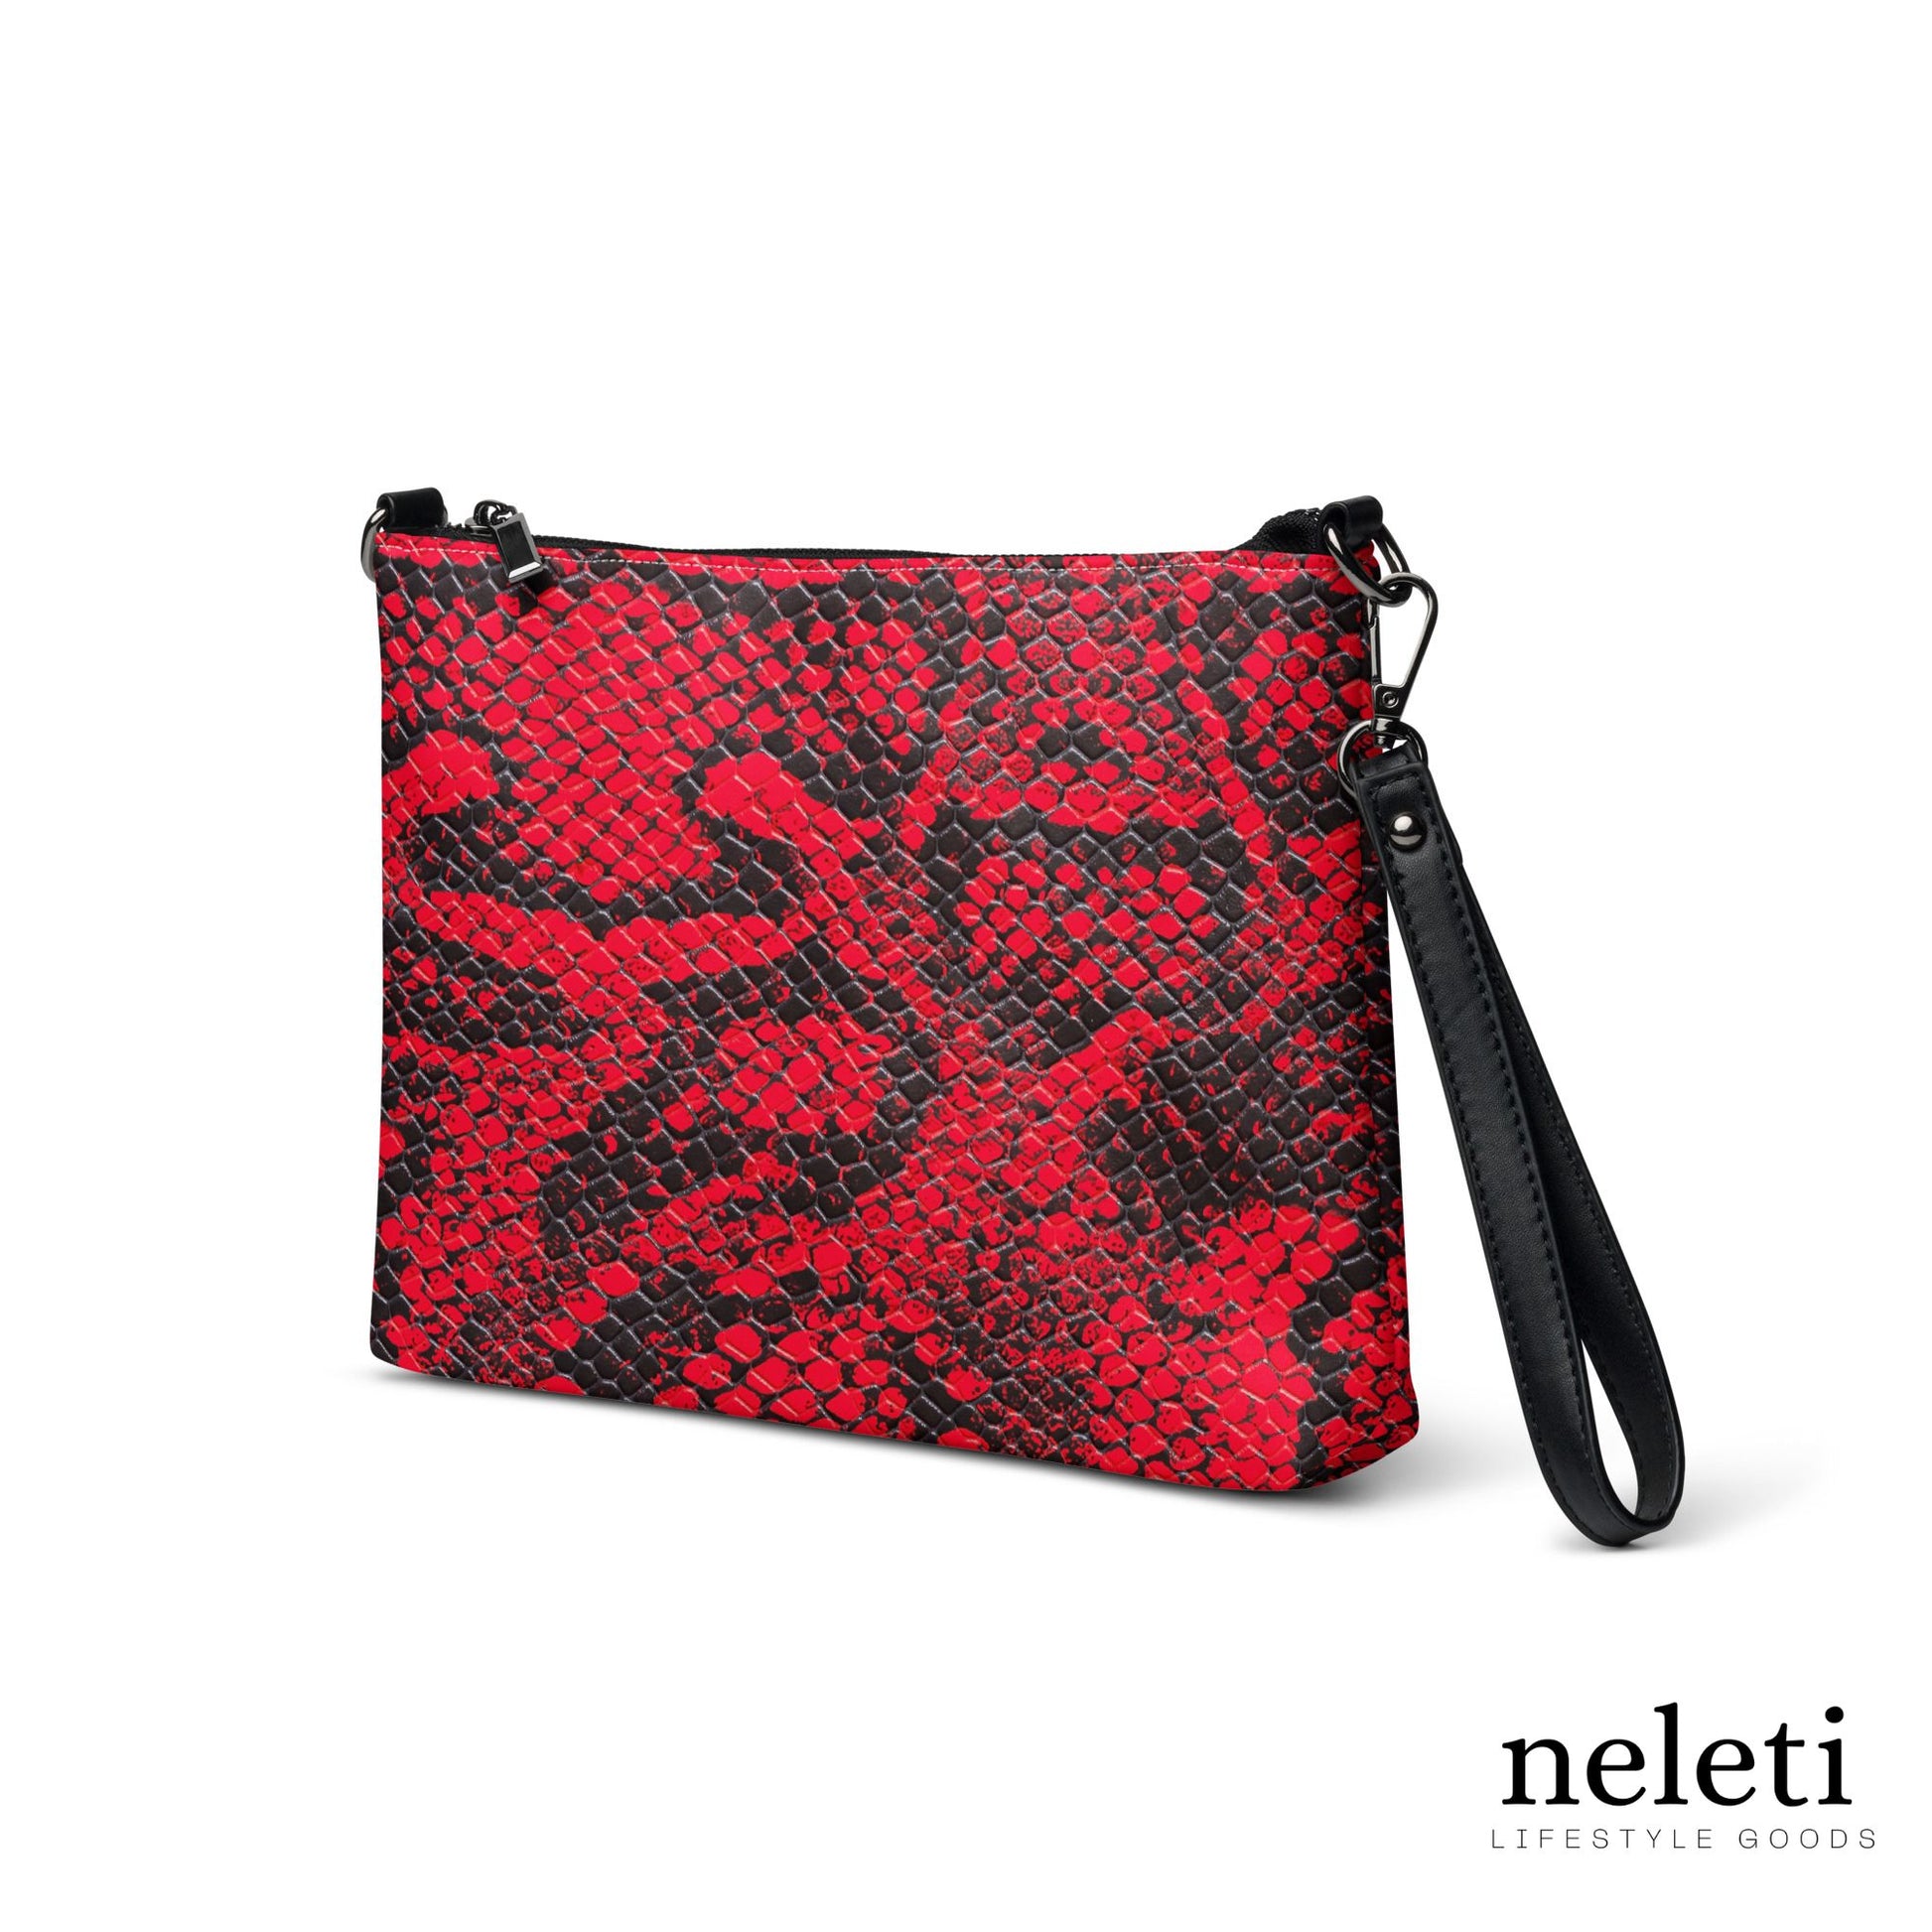 neleti.com-red-crossbody-bag